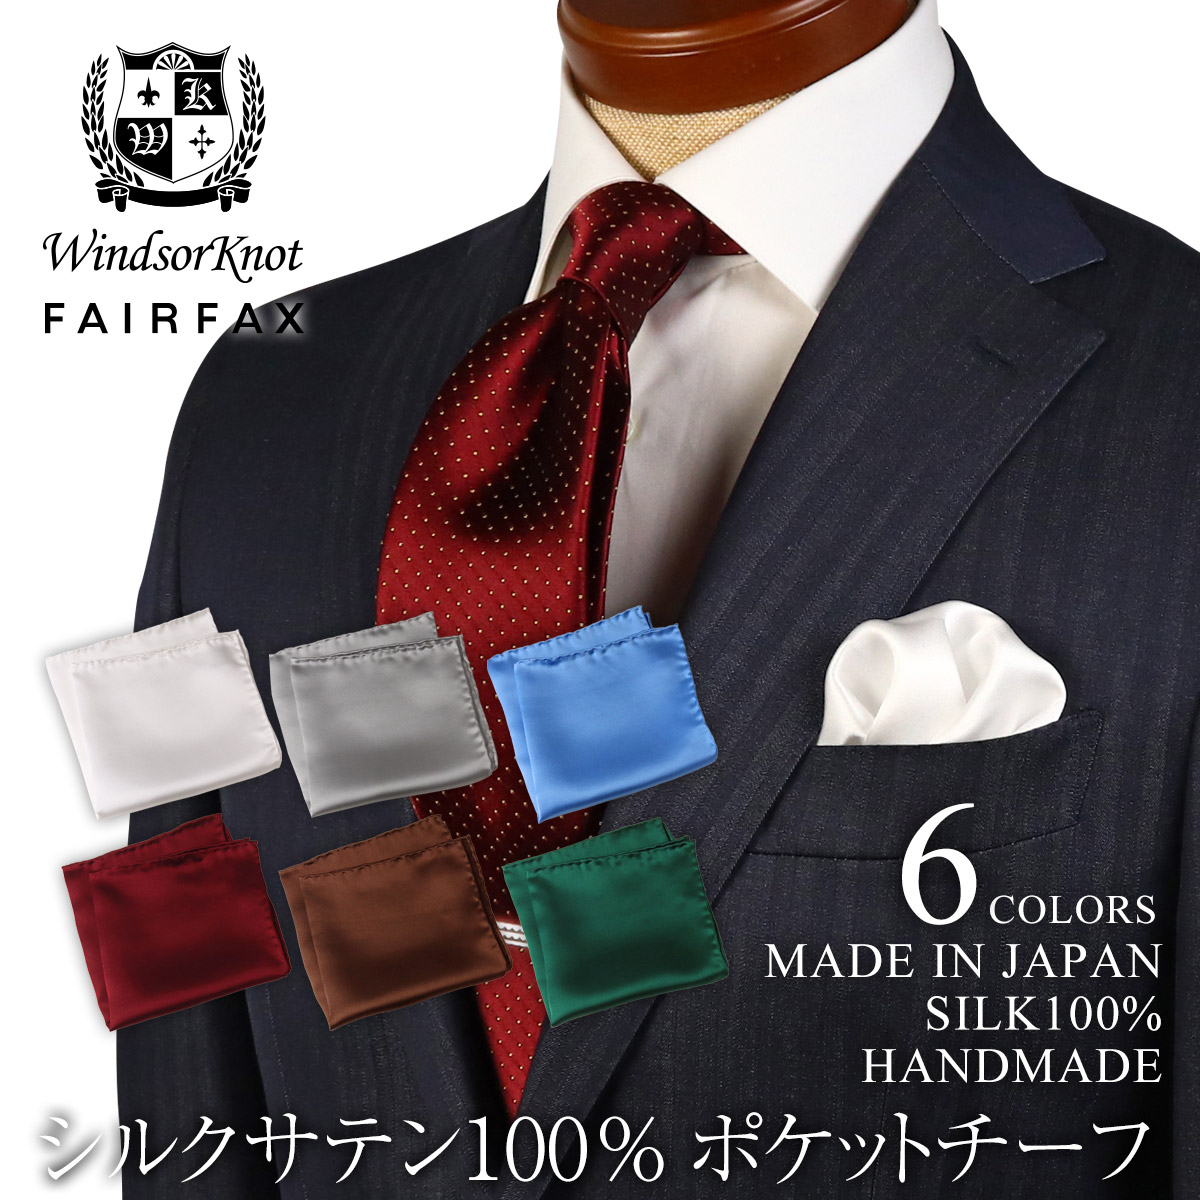 ポケットチーフ シルク 結婚式 ハンドメイド 日本製 シルクサテン100% 無地 フェアファクス FAIRFAX ウィンザーノット | 父の日 ギフト